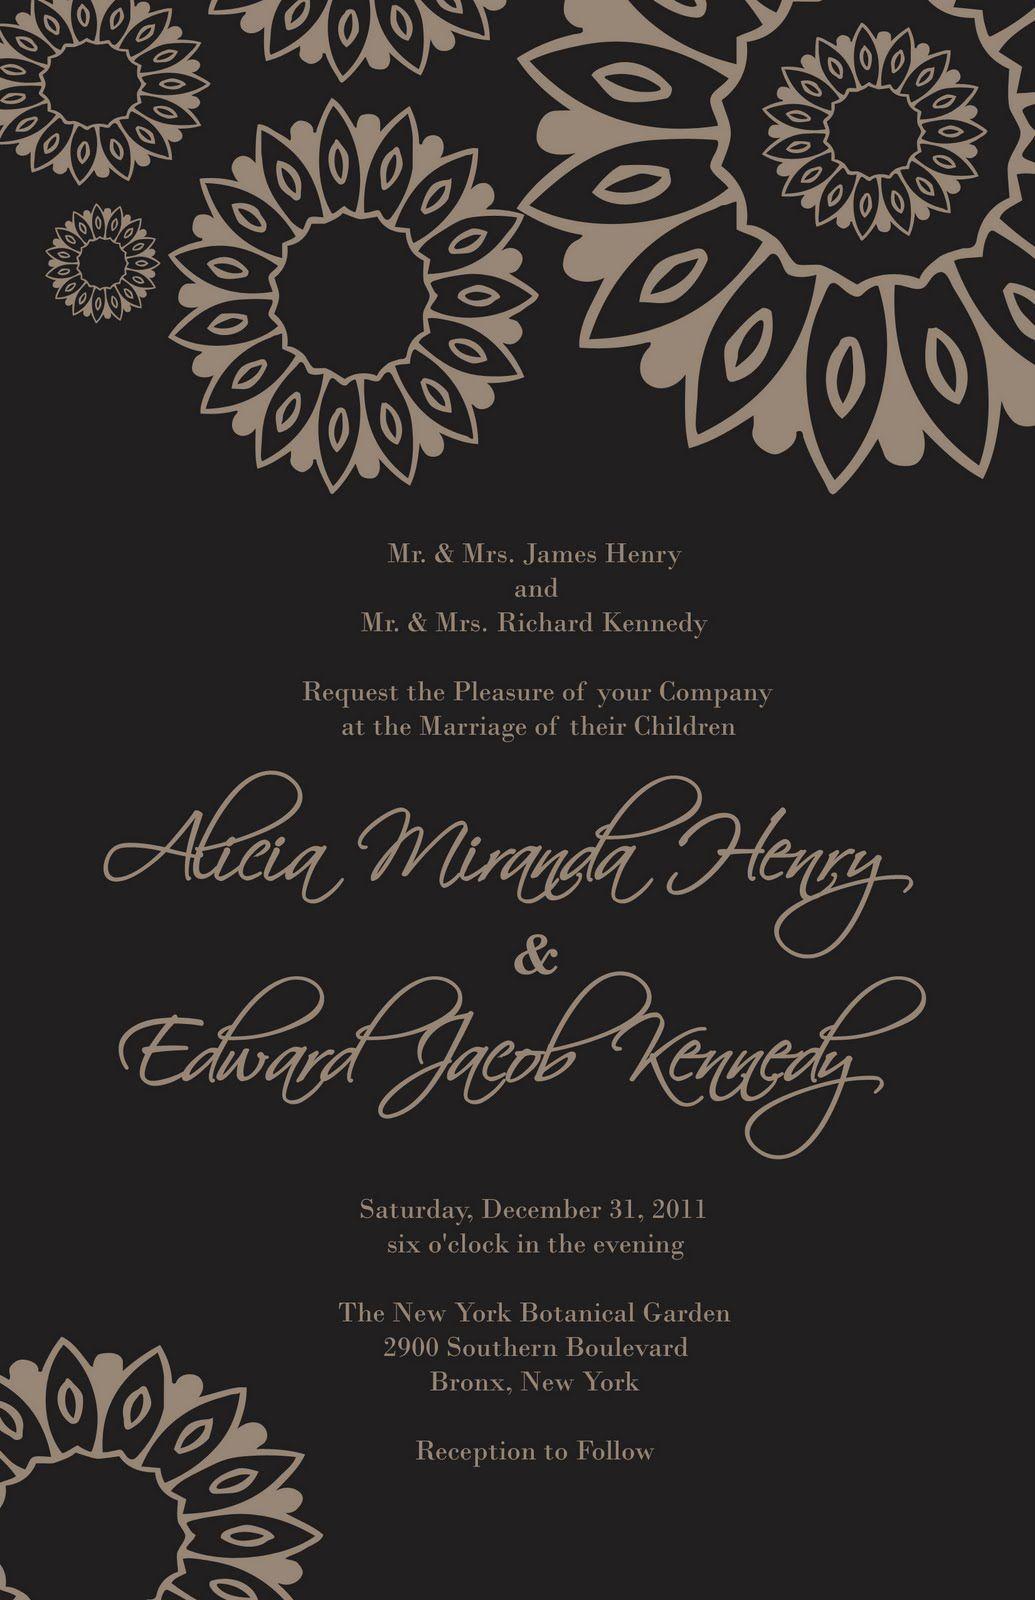 Flower Power Company Logo - Flower Power Design Wedding Invitation I used Adobe Photohop Shapes